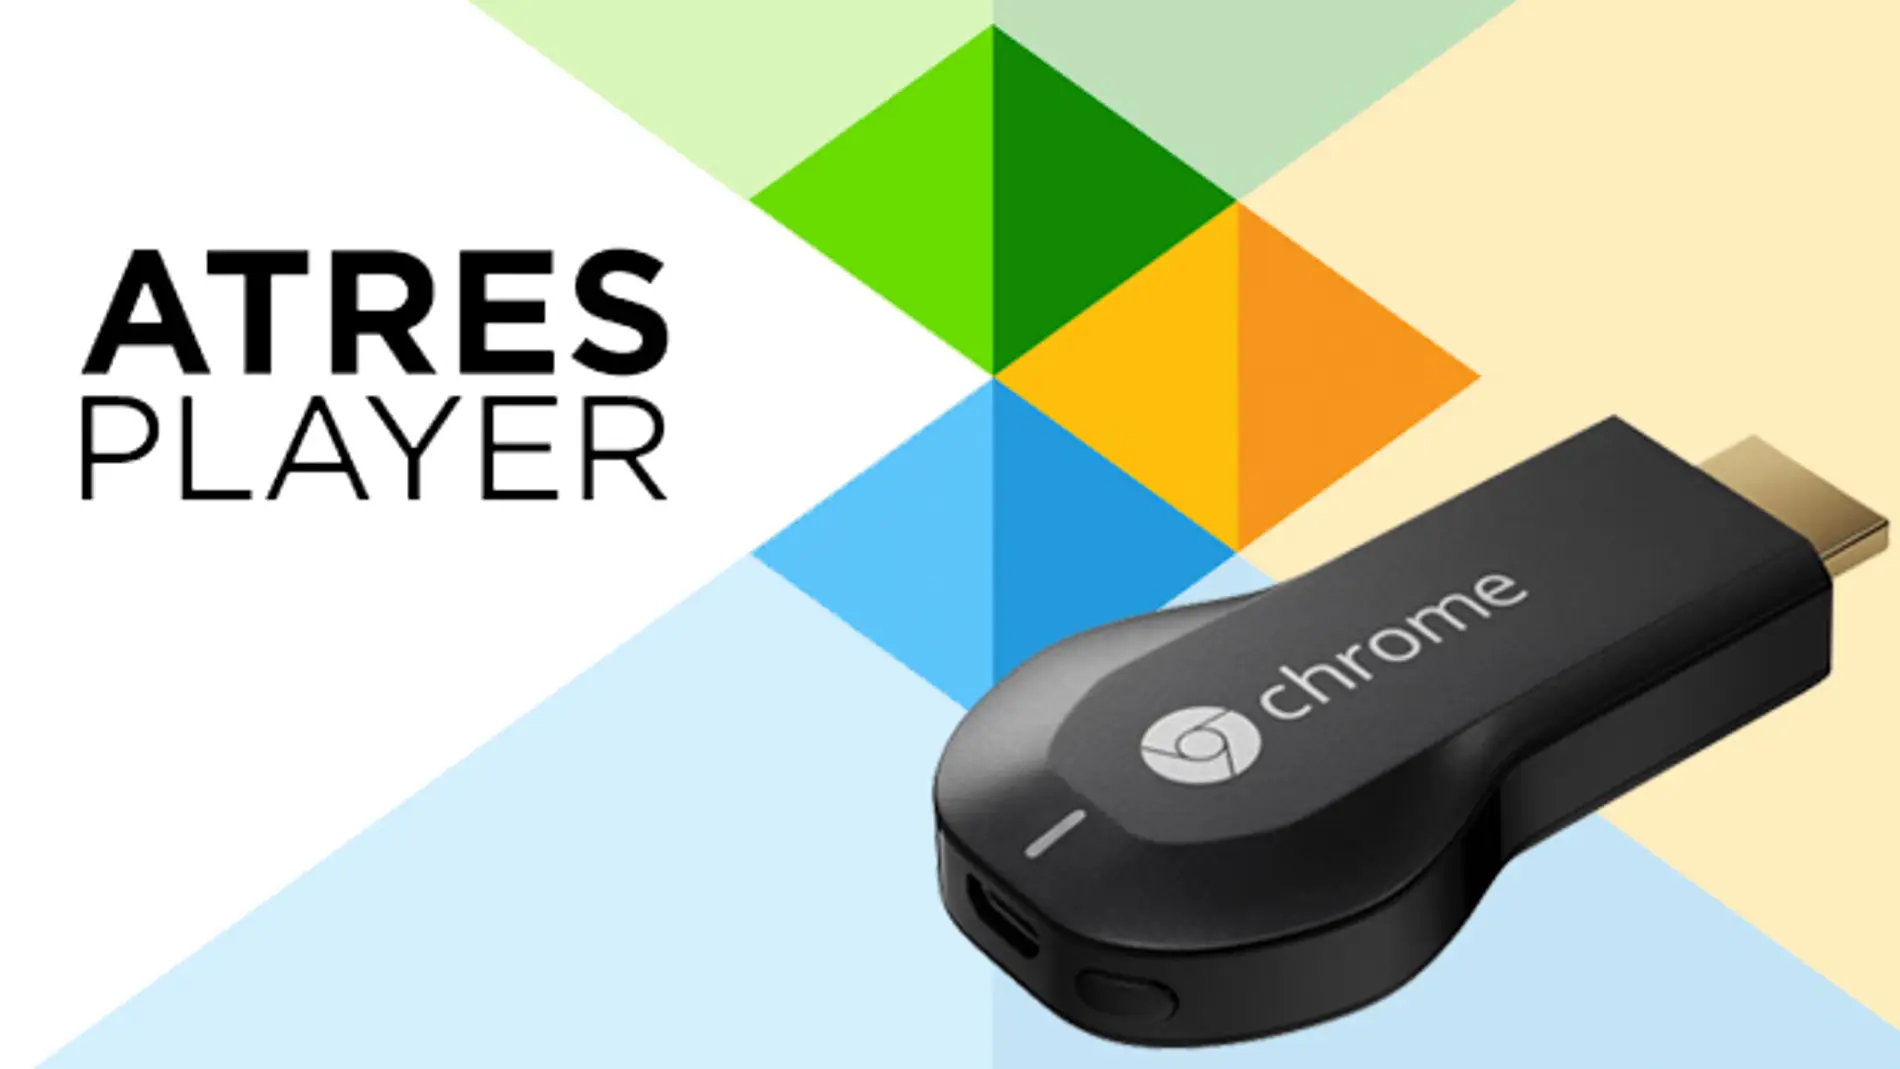 Atresplayer incorpora su compatibilidad con el dispositivo Chromecast de  Google